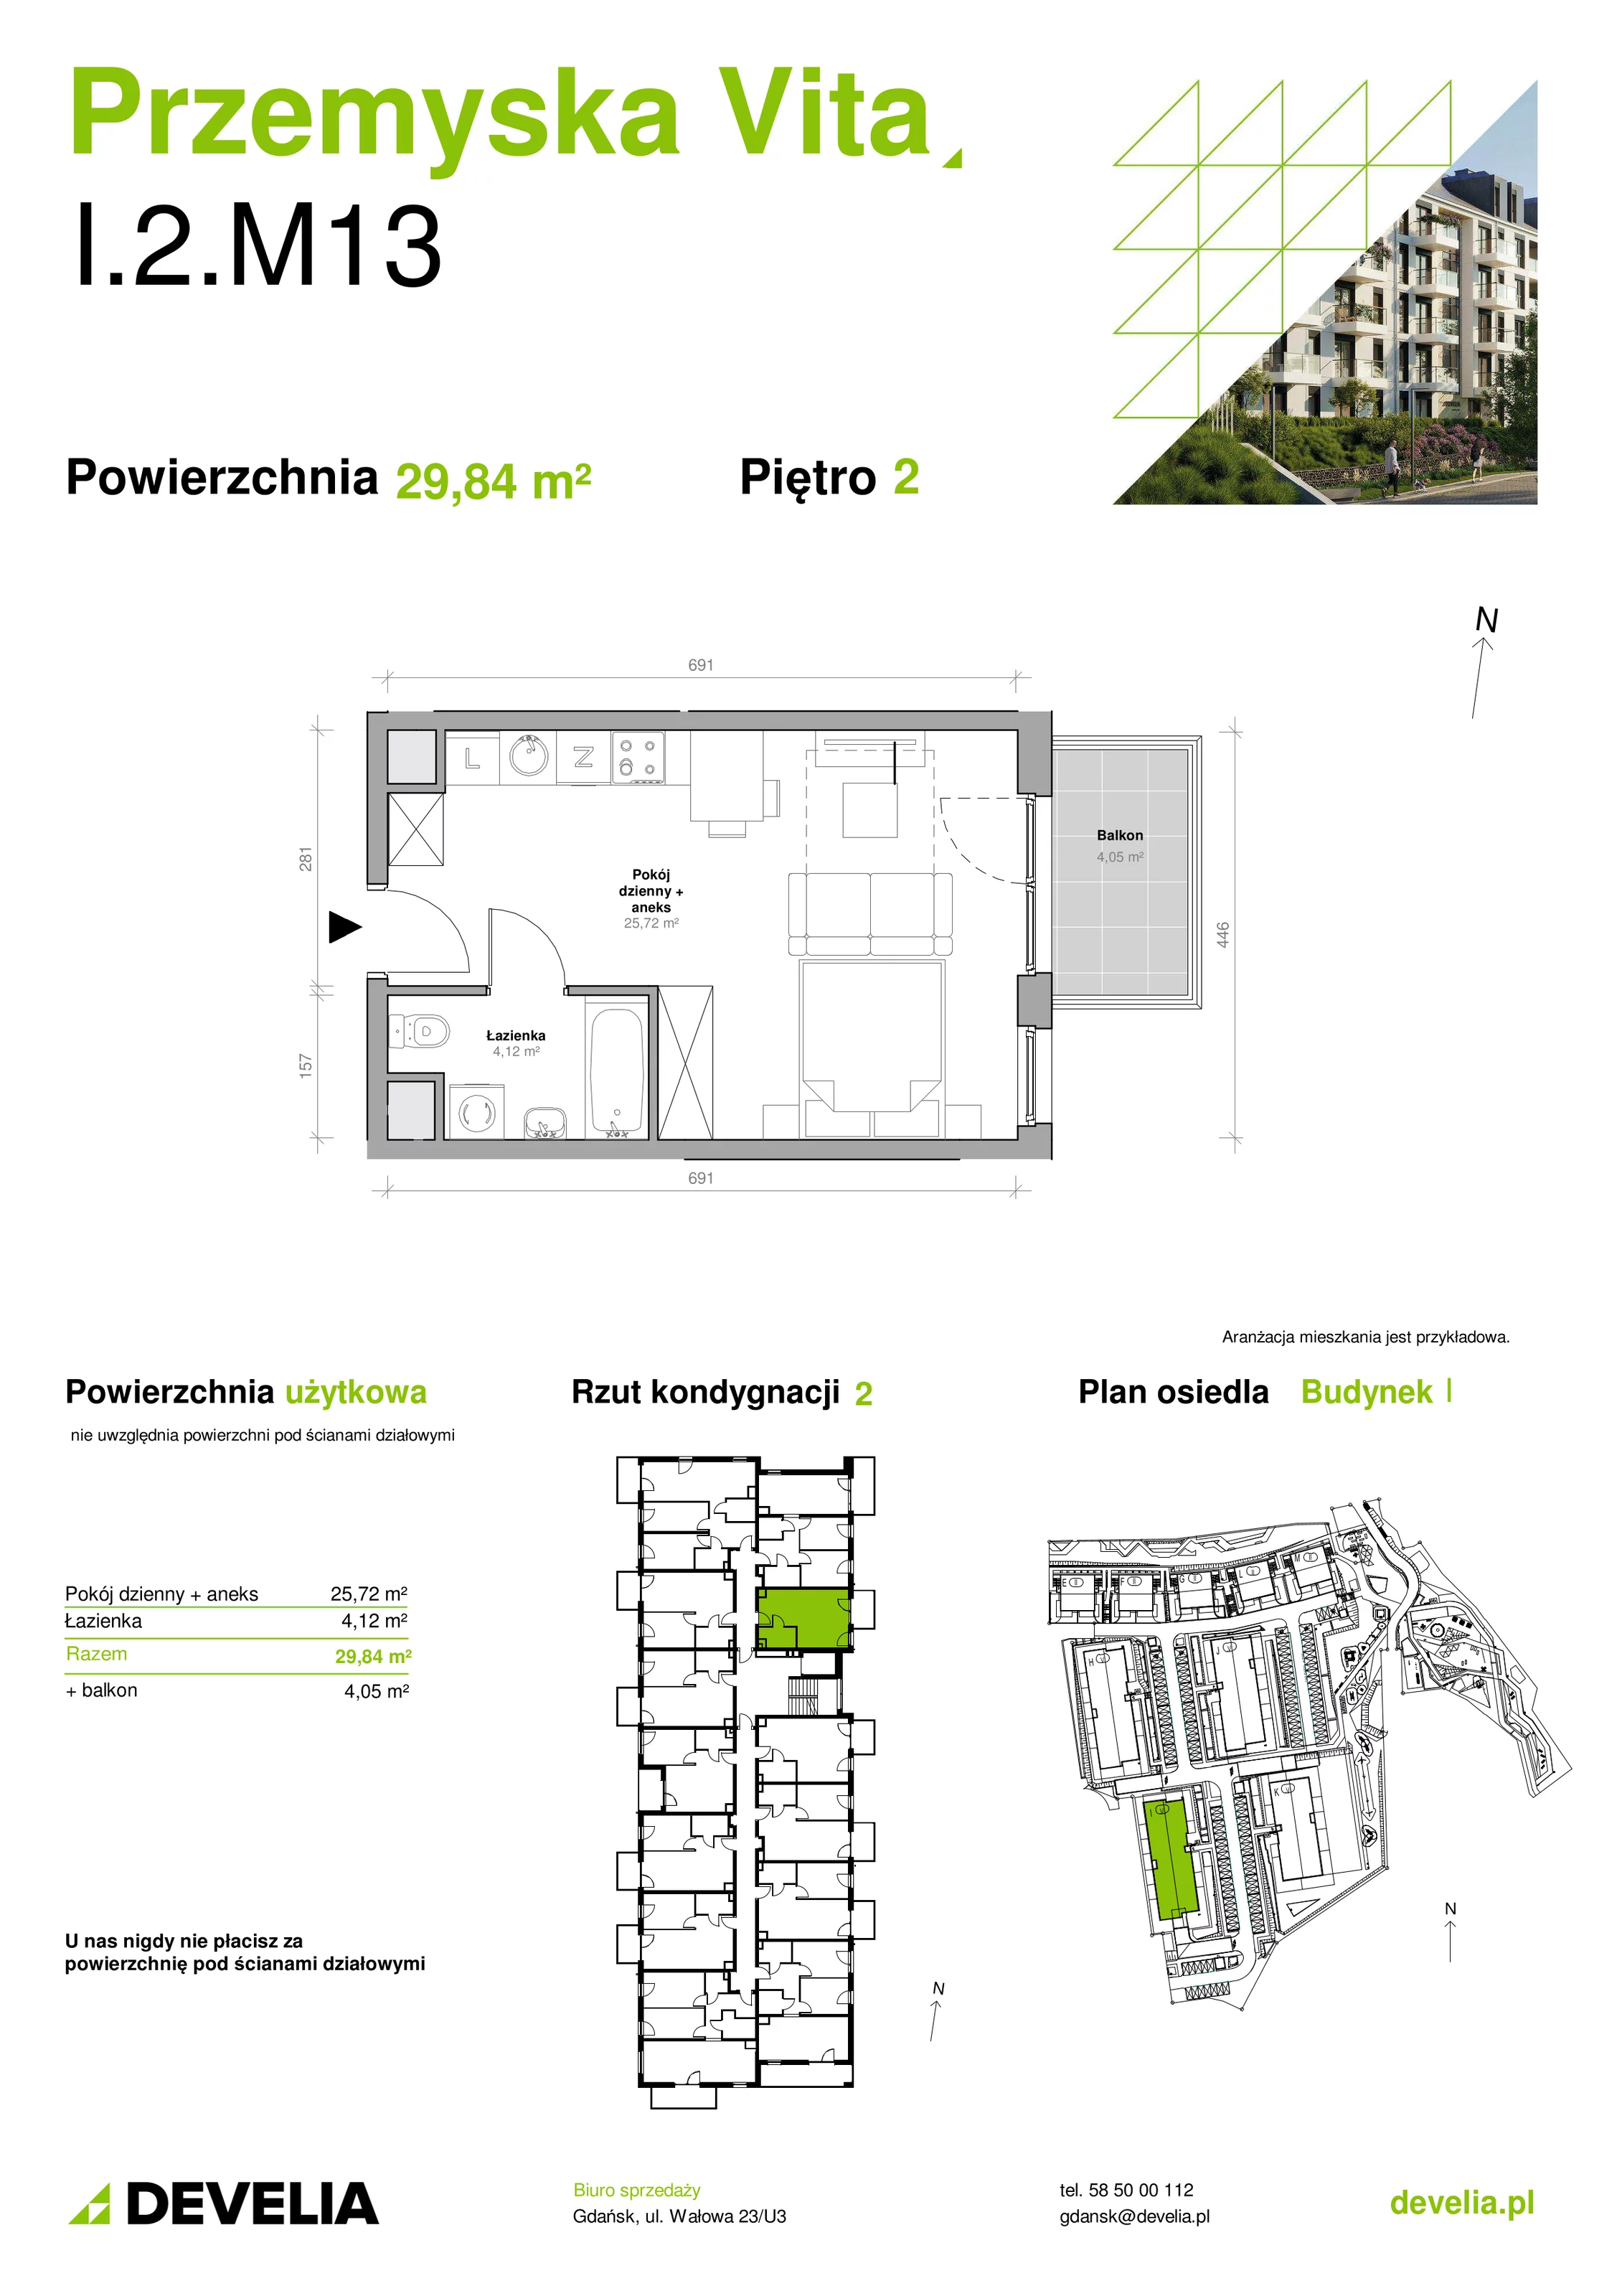 Mieszkanie 29,84 m², piętro 2, oferta nr I.2.M13, Przemyska Vita, Gdańsk, Ujeścisko-Łostowice, Ujeścisko, ul. Przemyska 37